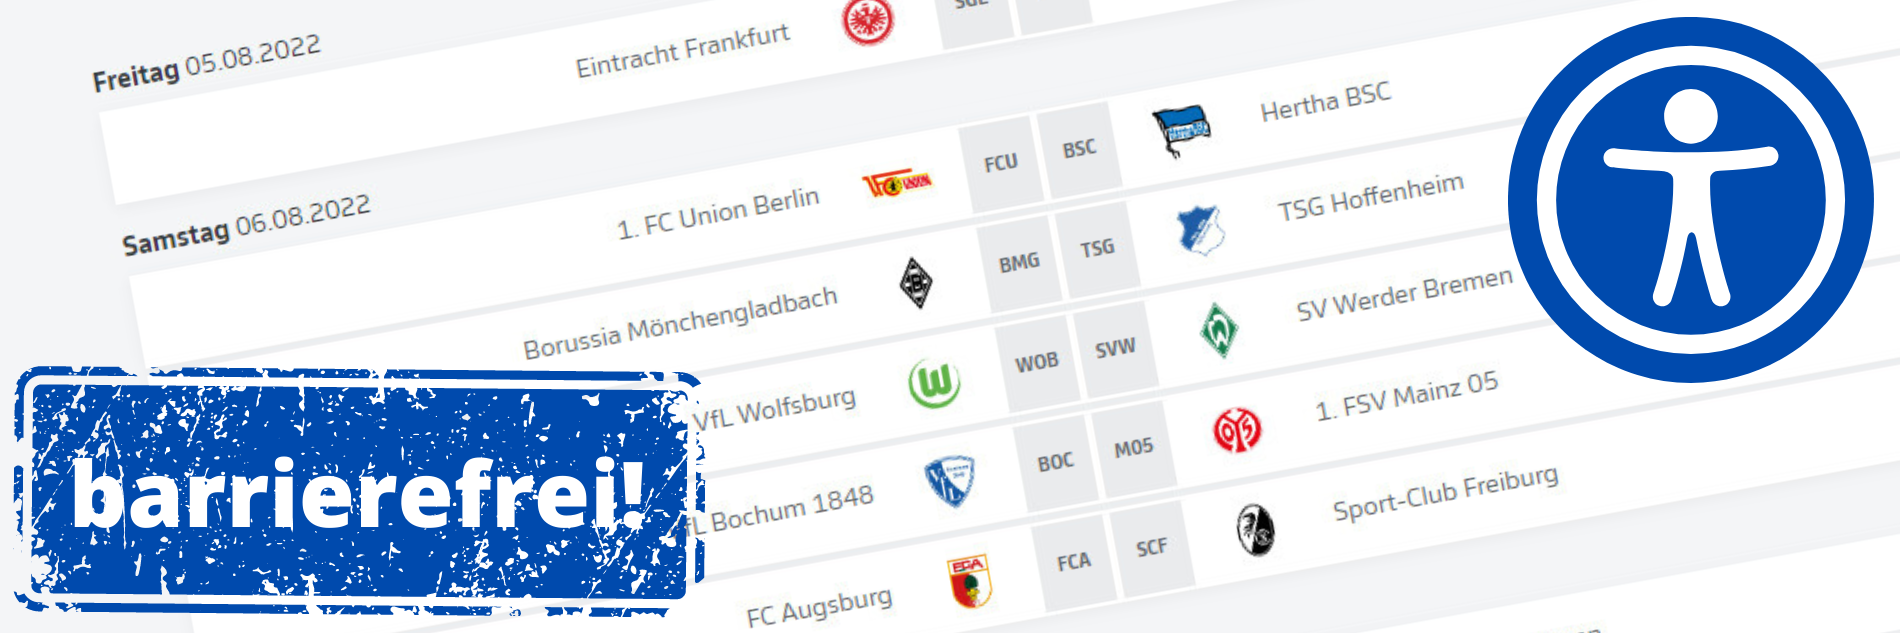 Screenshot mit Spielpaarungen aus dem Bundesliga-Spielplan. Darüber ein 